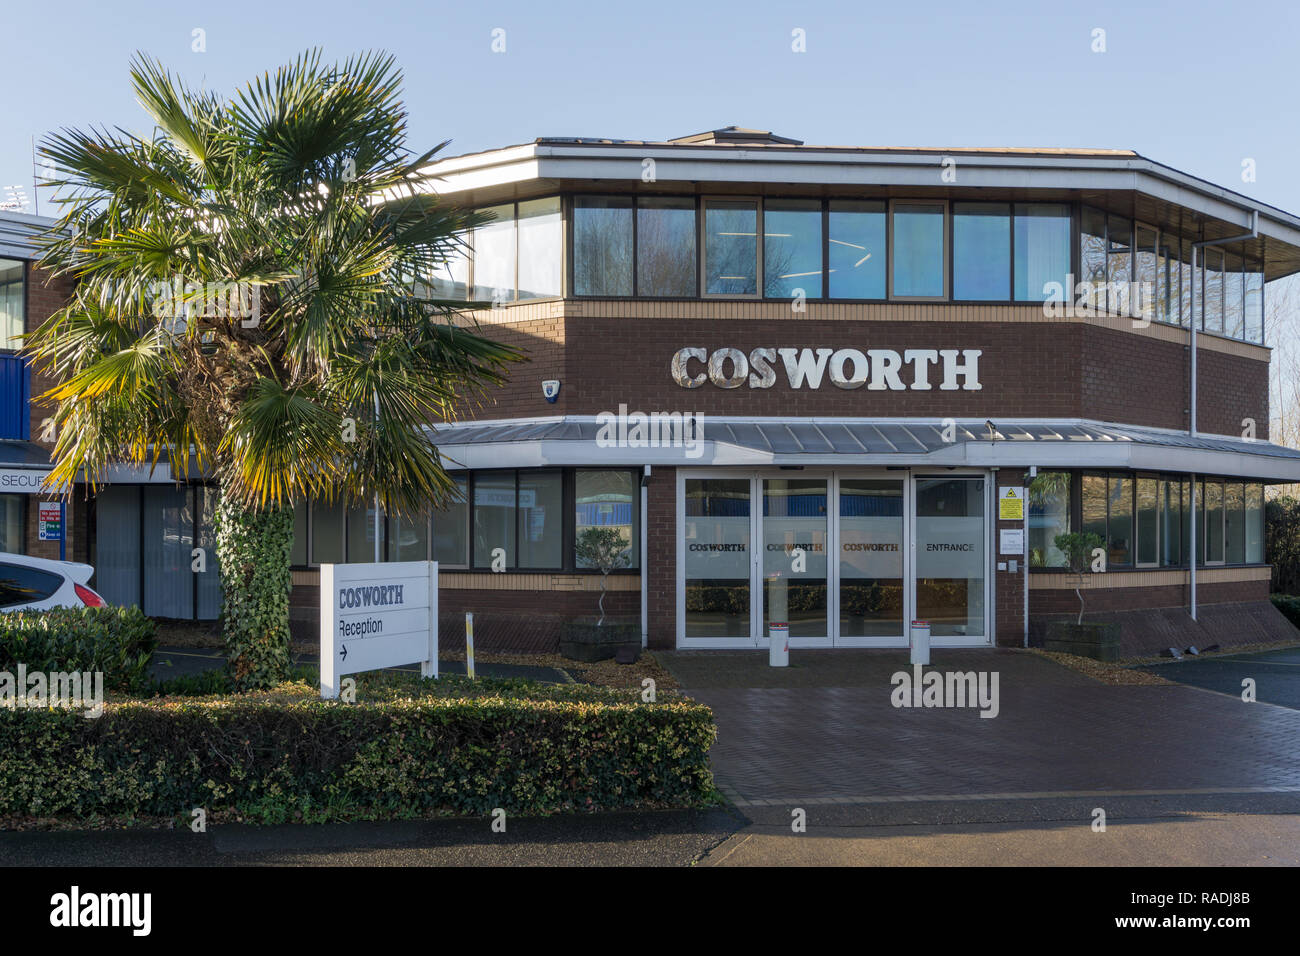 L'Ottagono, HQ della Cosworth, un ben noto automotive e motorsport ferma, Northampton, Regno Unito Foto Stock